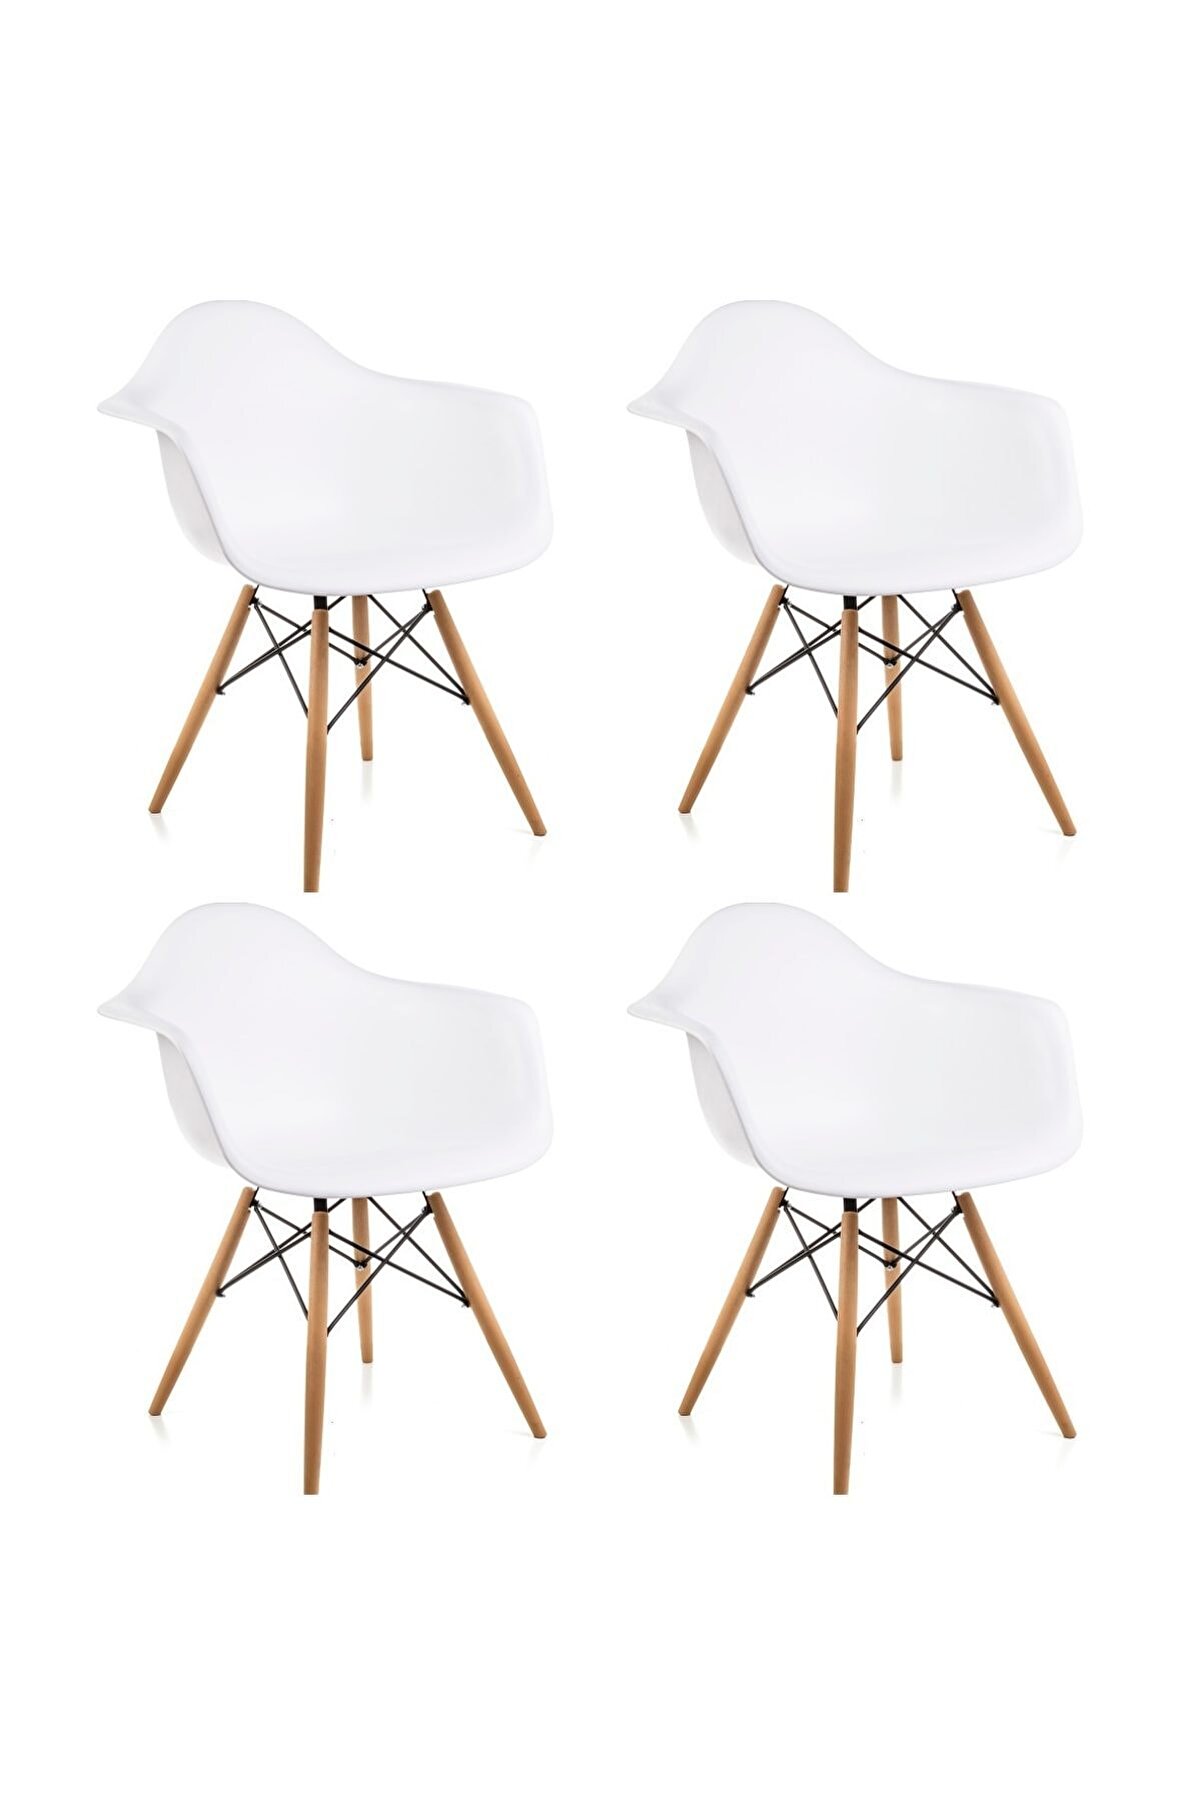 Dorcia Home Kolçaklı Beyaz Eames Sandalye - 4 Adet - Cafe Balkon Mutfak Sandalyesi